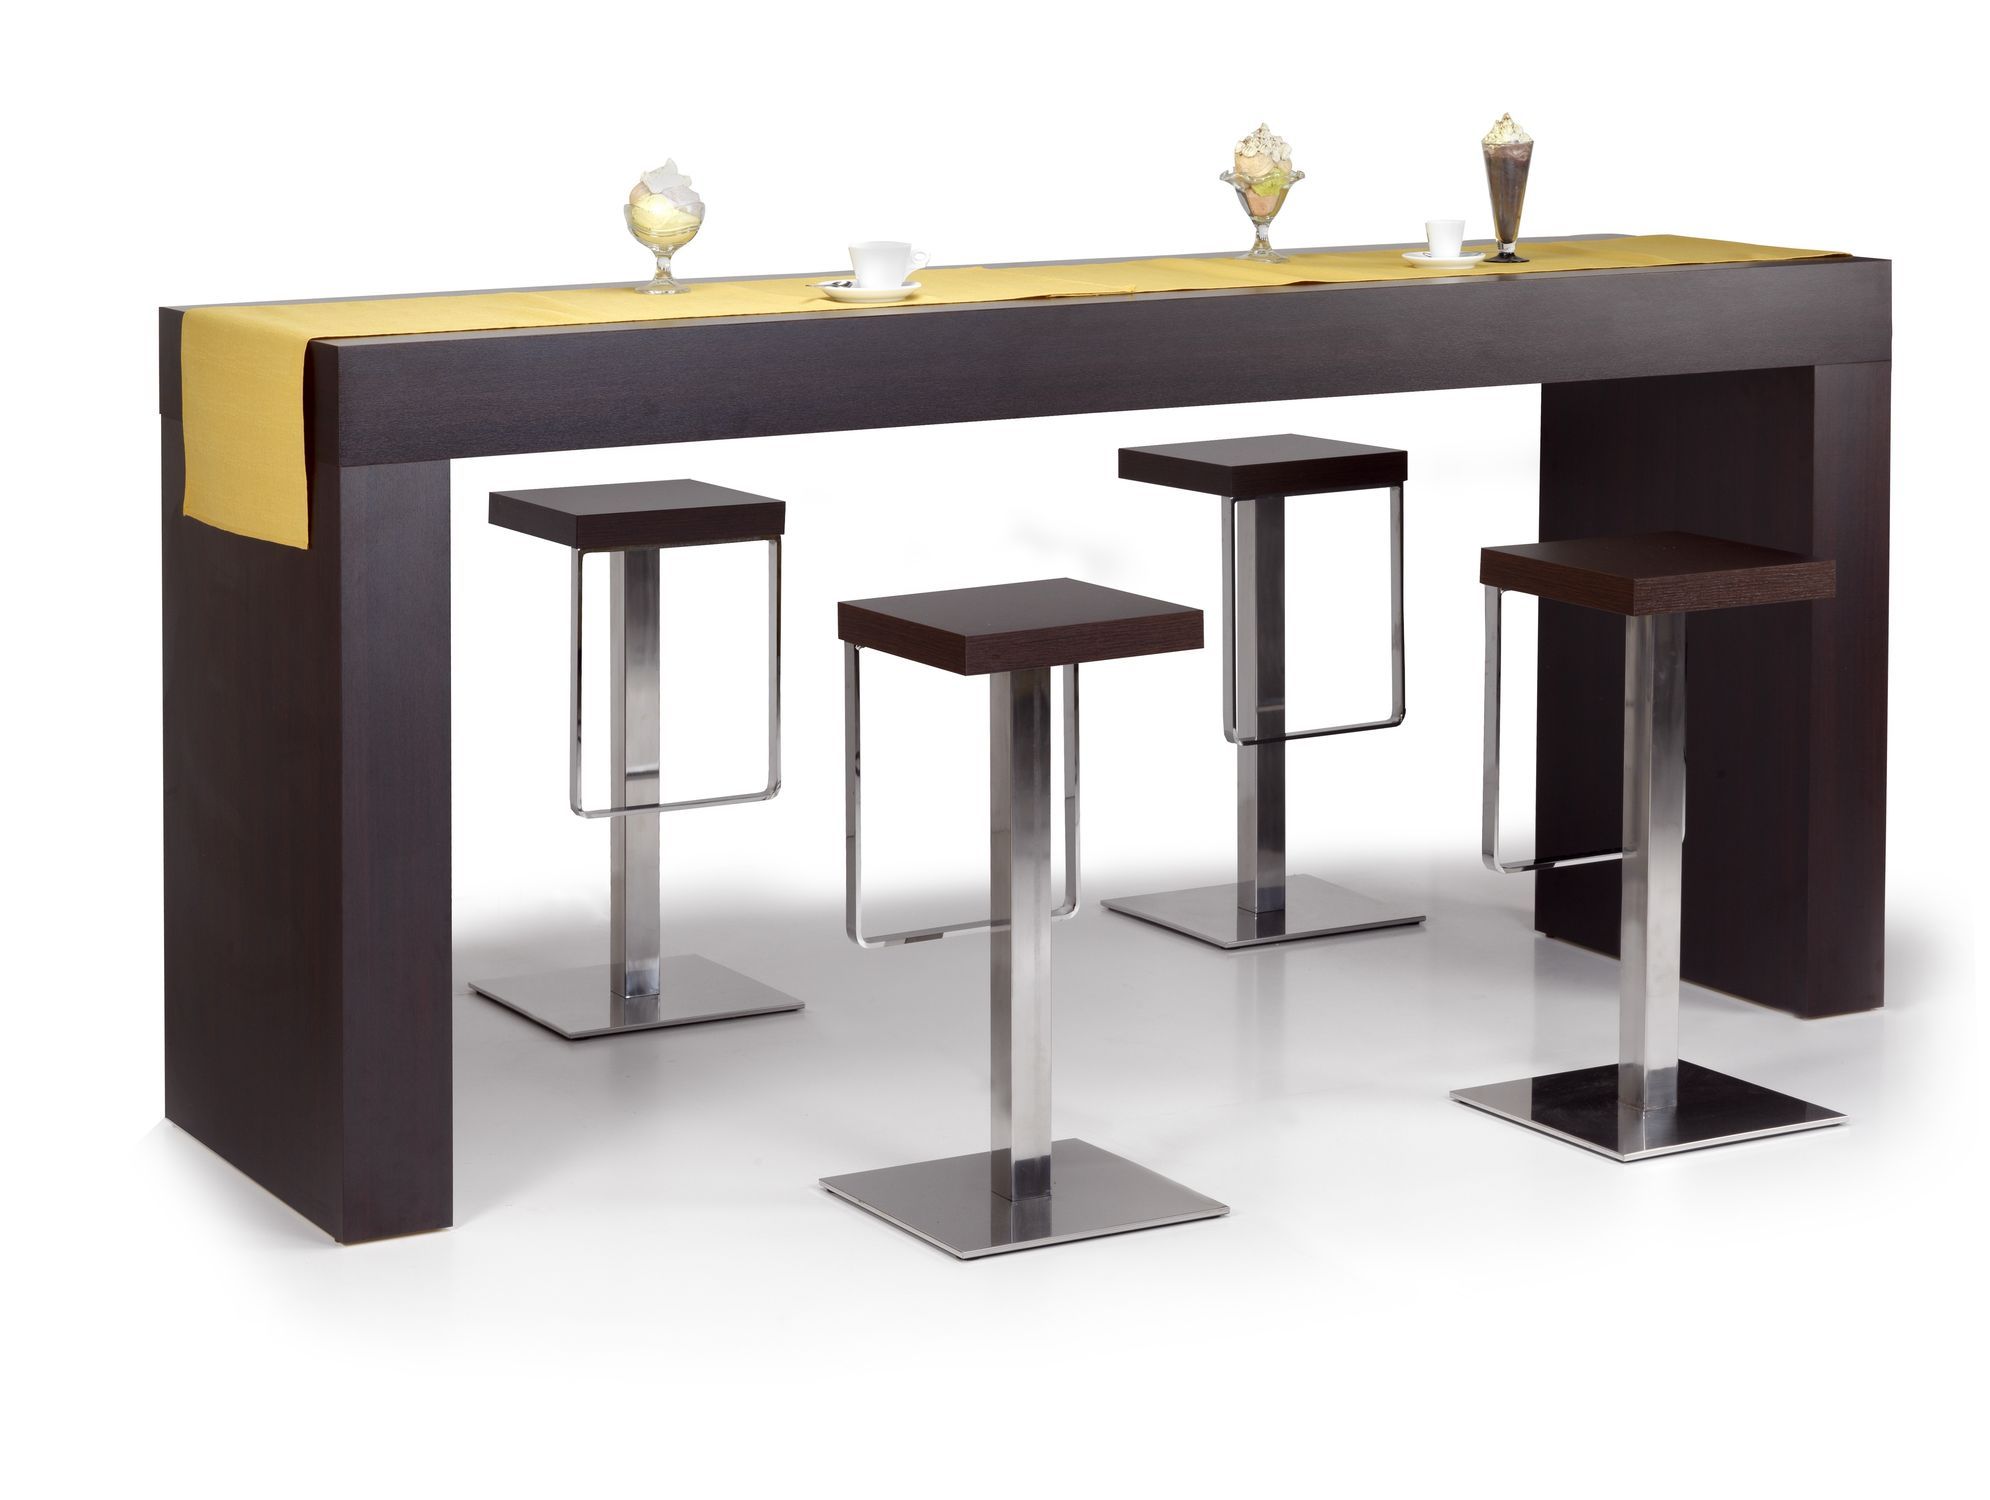 Стол обеденный барная стойка: барная стойка или стол для кухни, преимуществ...